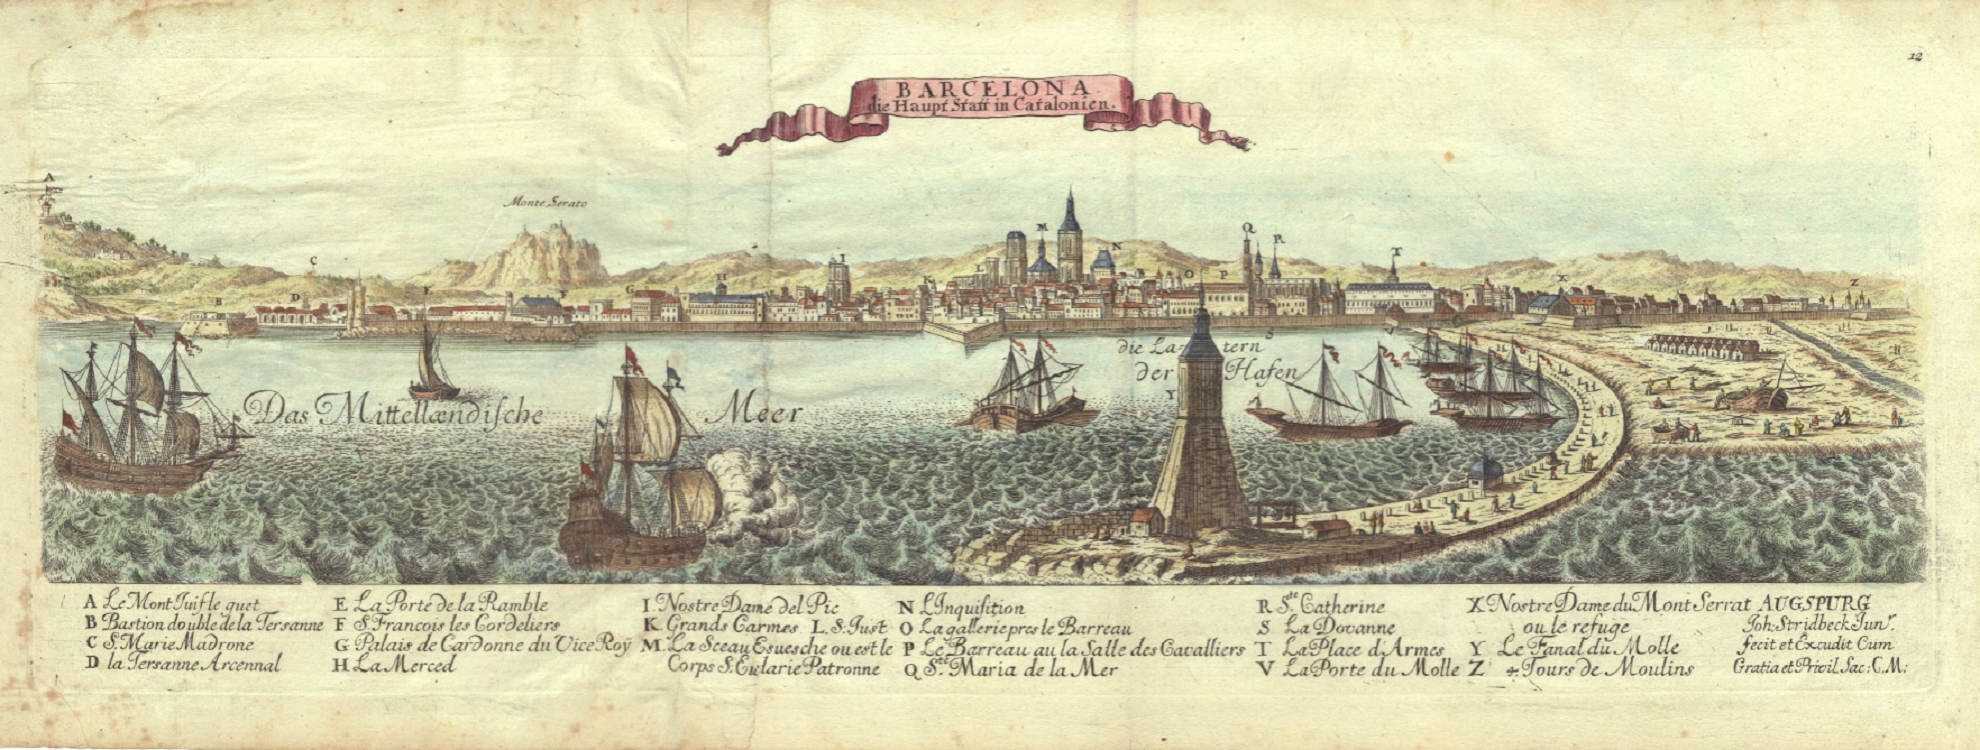 Grabado de Barcelona (principios del siglo XVIII). Fuente: Cartoteca de Catalunya